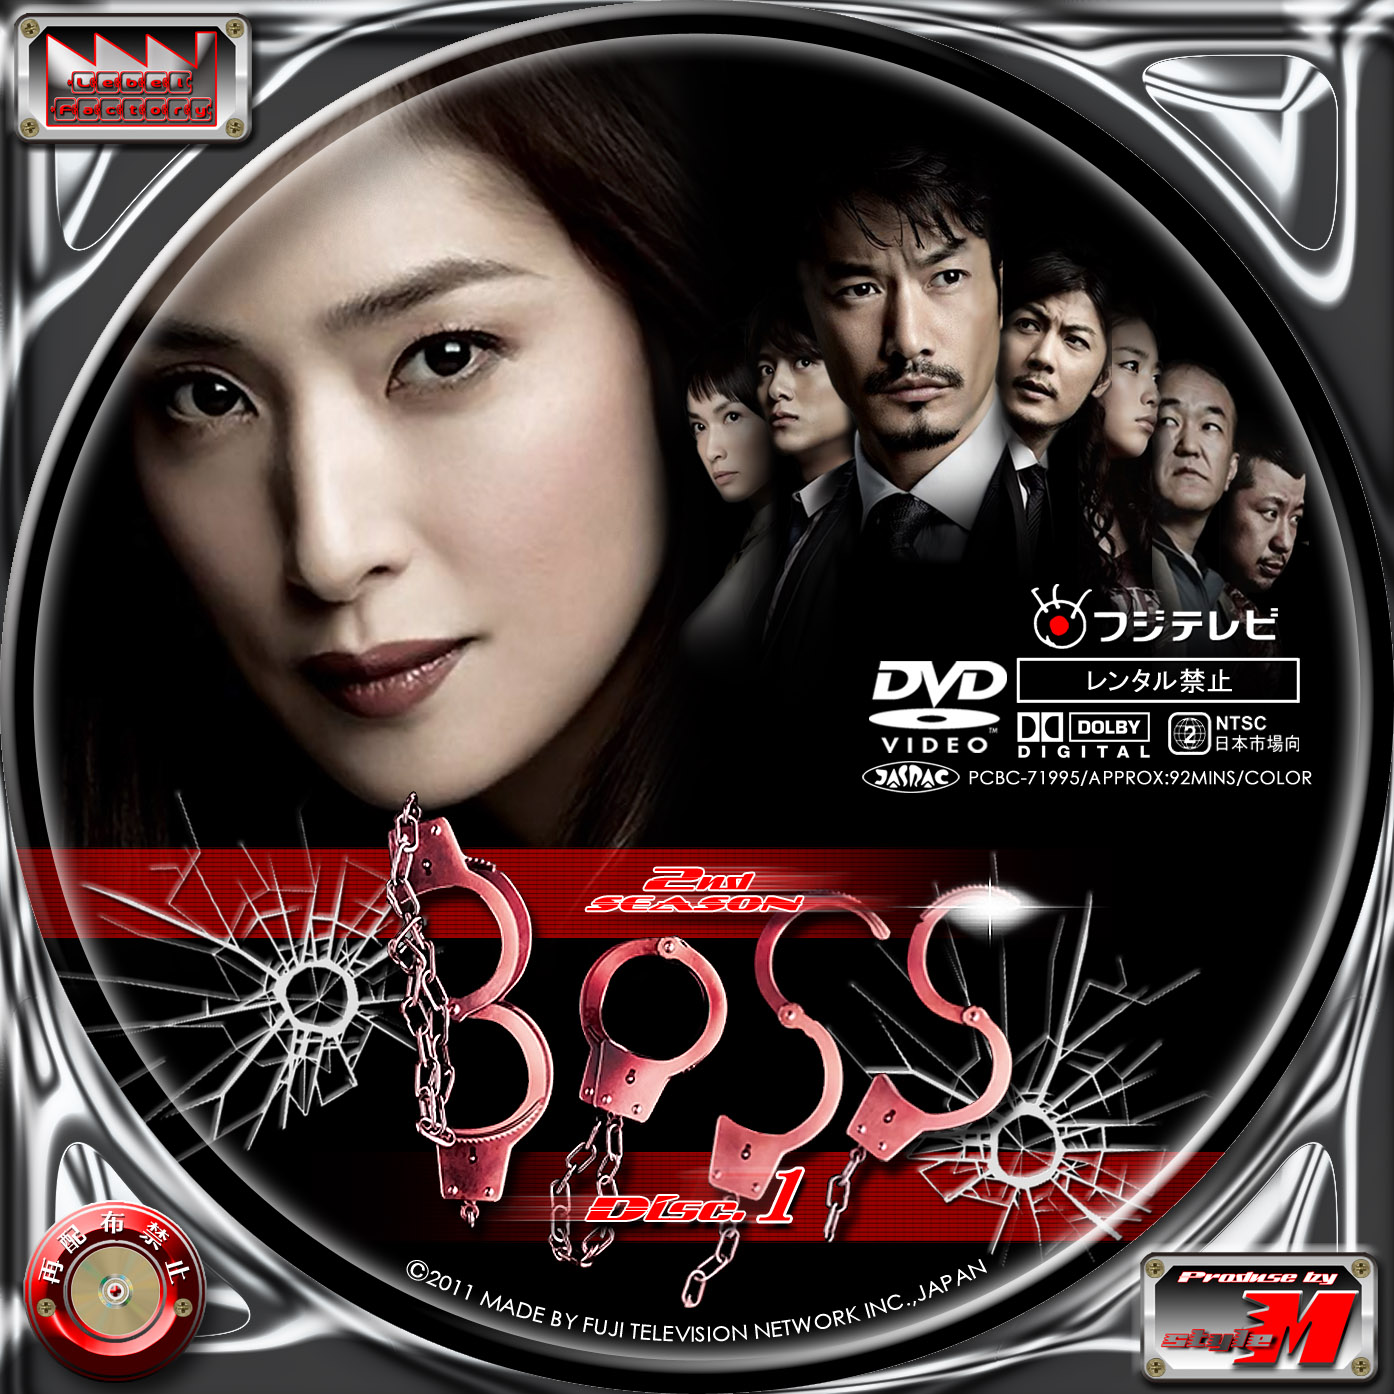 Boss Season2 Disc1 3 Label Factory M Style 自作dvd レーベル ラベル